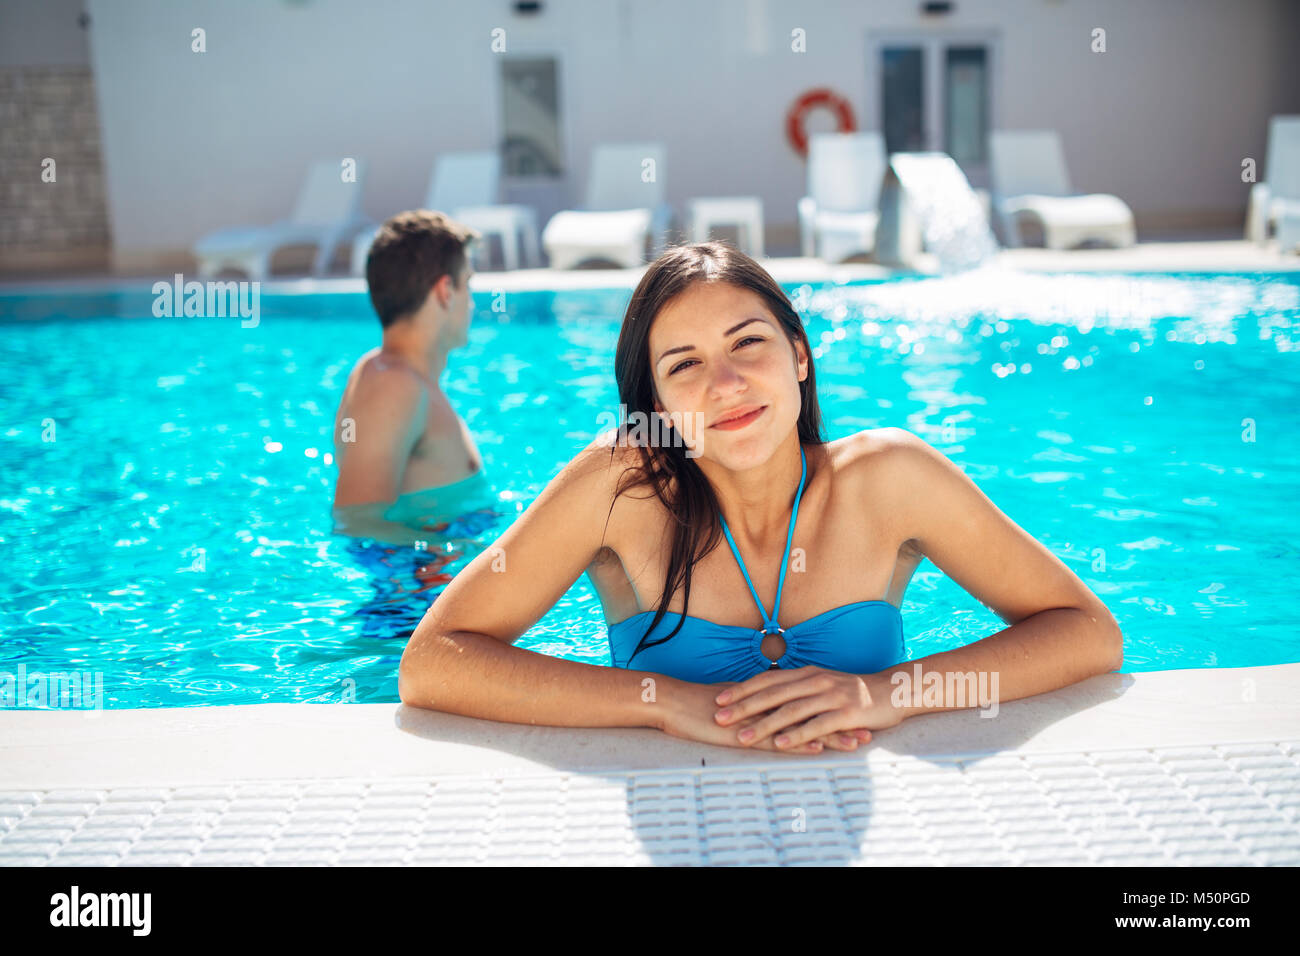 Smiling cheerful woman swimming in pool clairement sur une journée ensoleillée.s'amuser en vacances pool party.Friendly female bénéficiant d'hôtel relaxant locations.Somme Banque D'Images